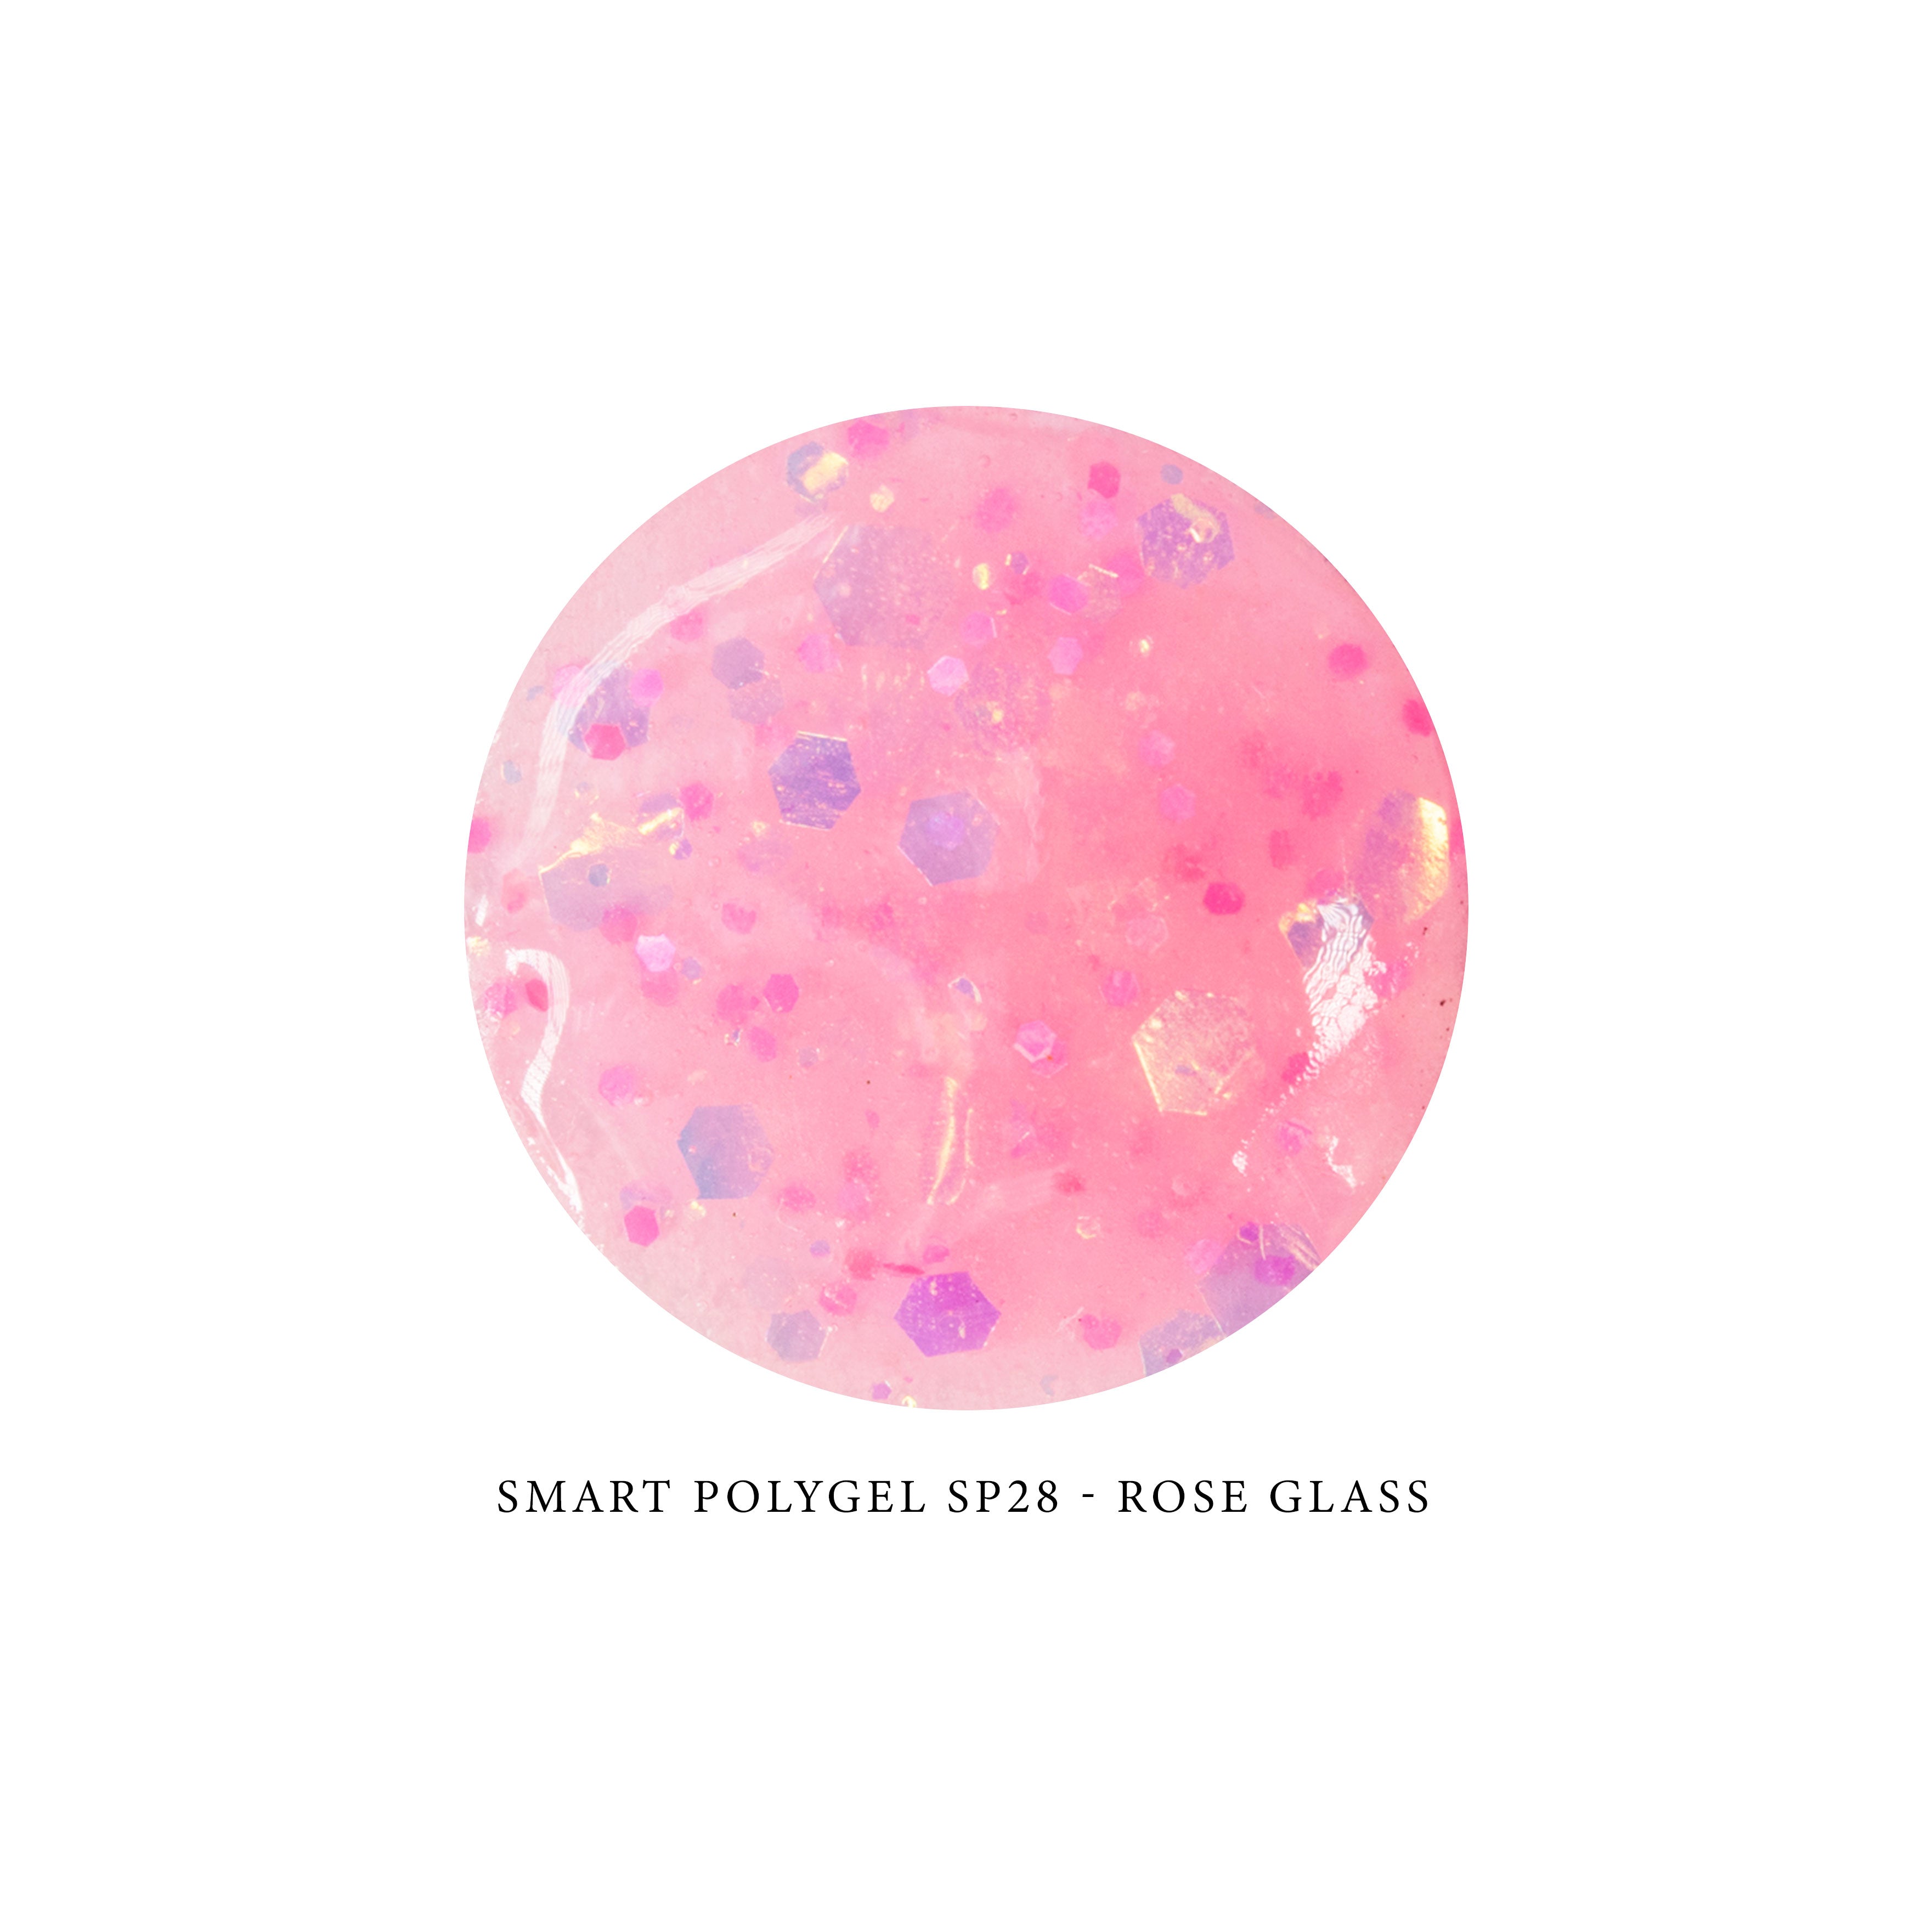 Smart Polygel SP28 - ROSE GLASS 15ml